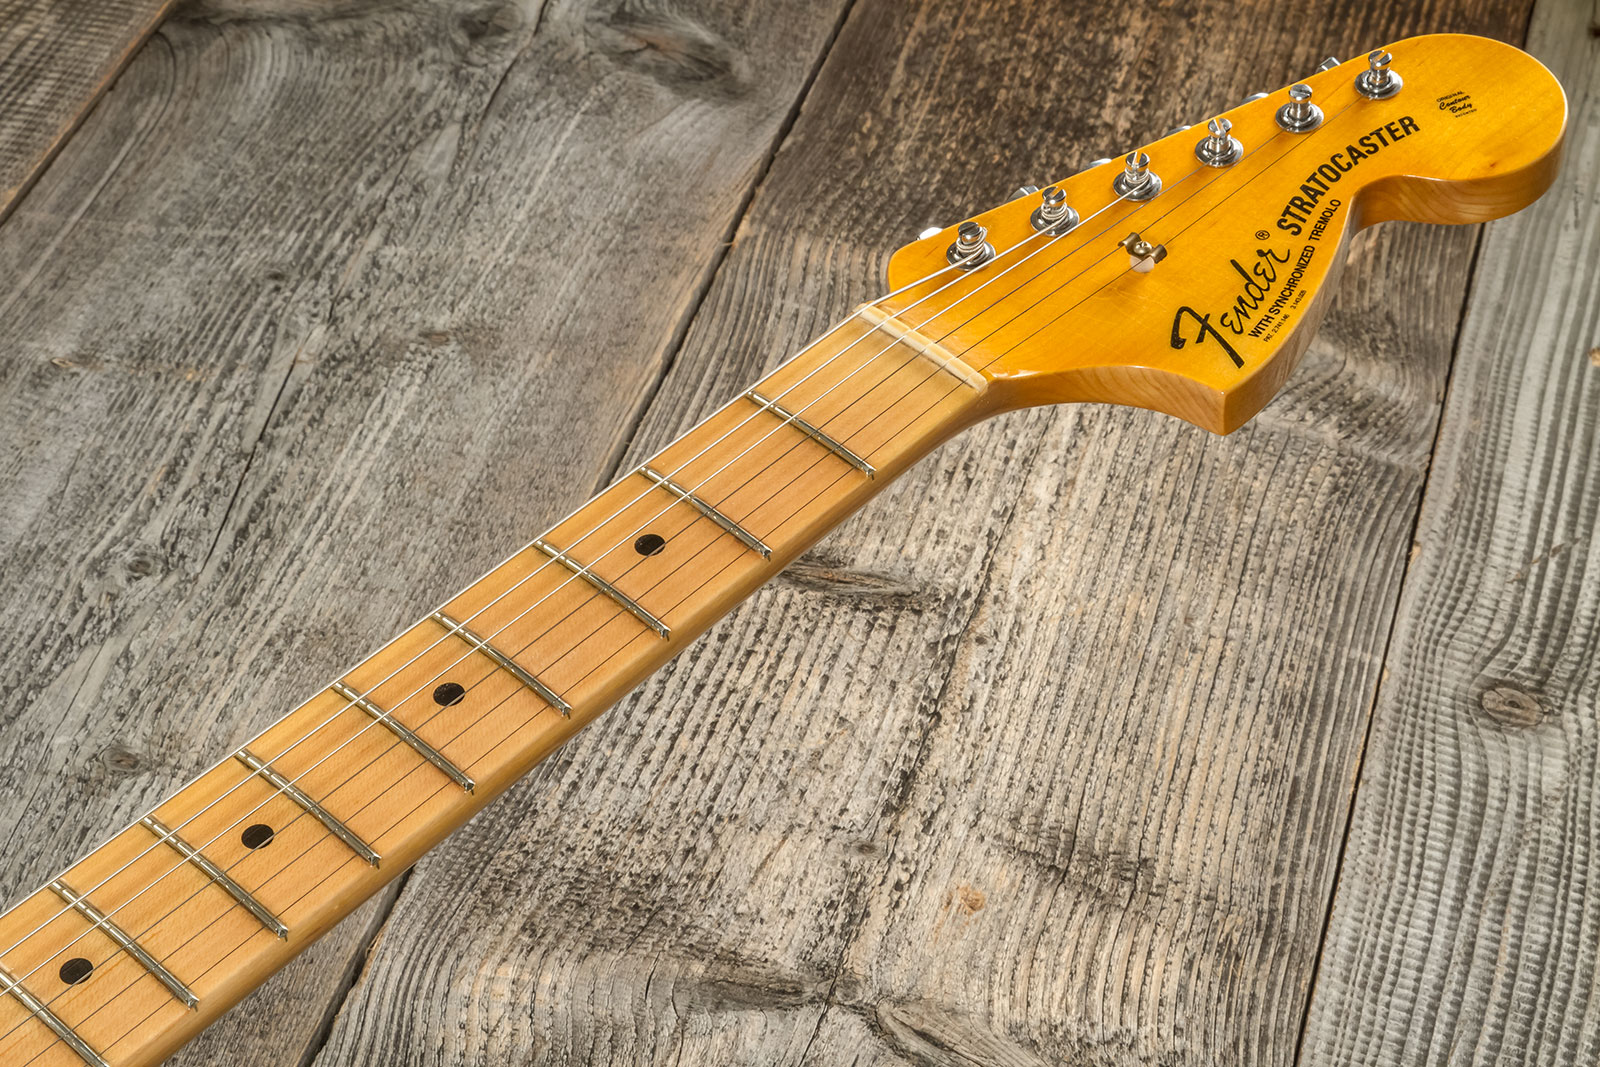 Fender Custom Shop Strat 1969 3s Trem Mn #cz576216 - Journeyman Relic Aged Vintage White - Str shape electric guitar - Variation 8